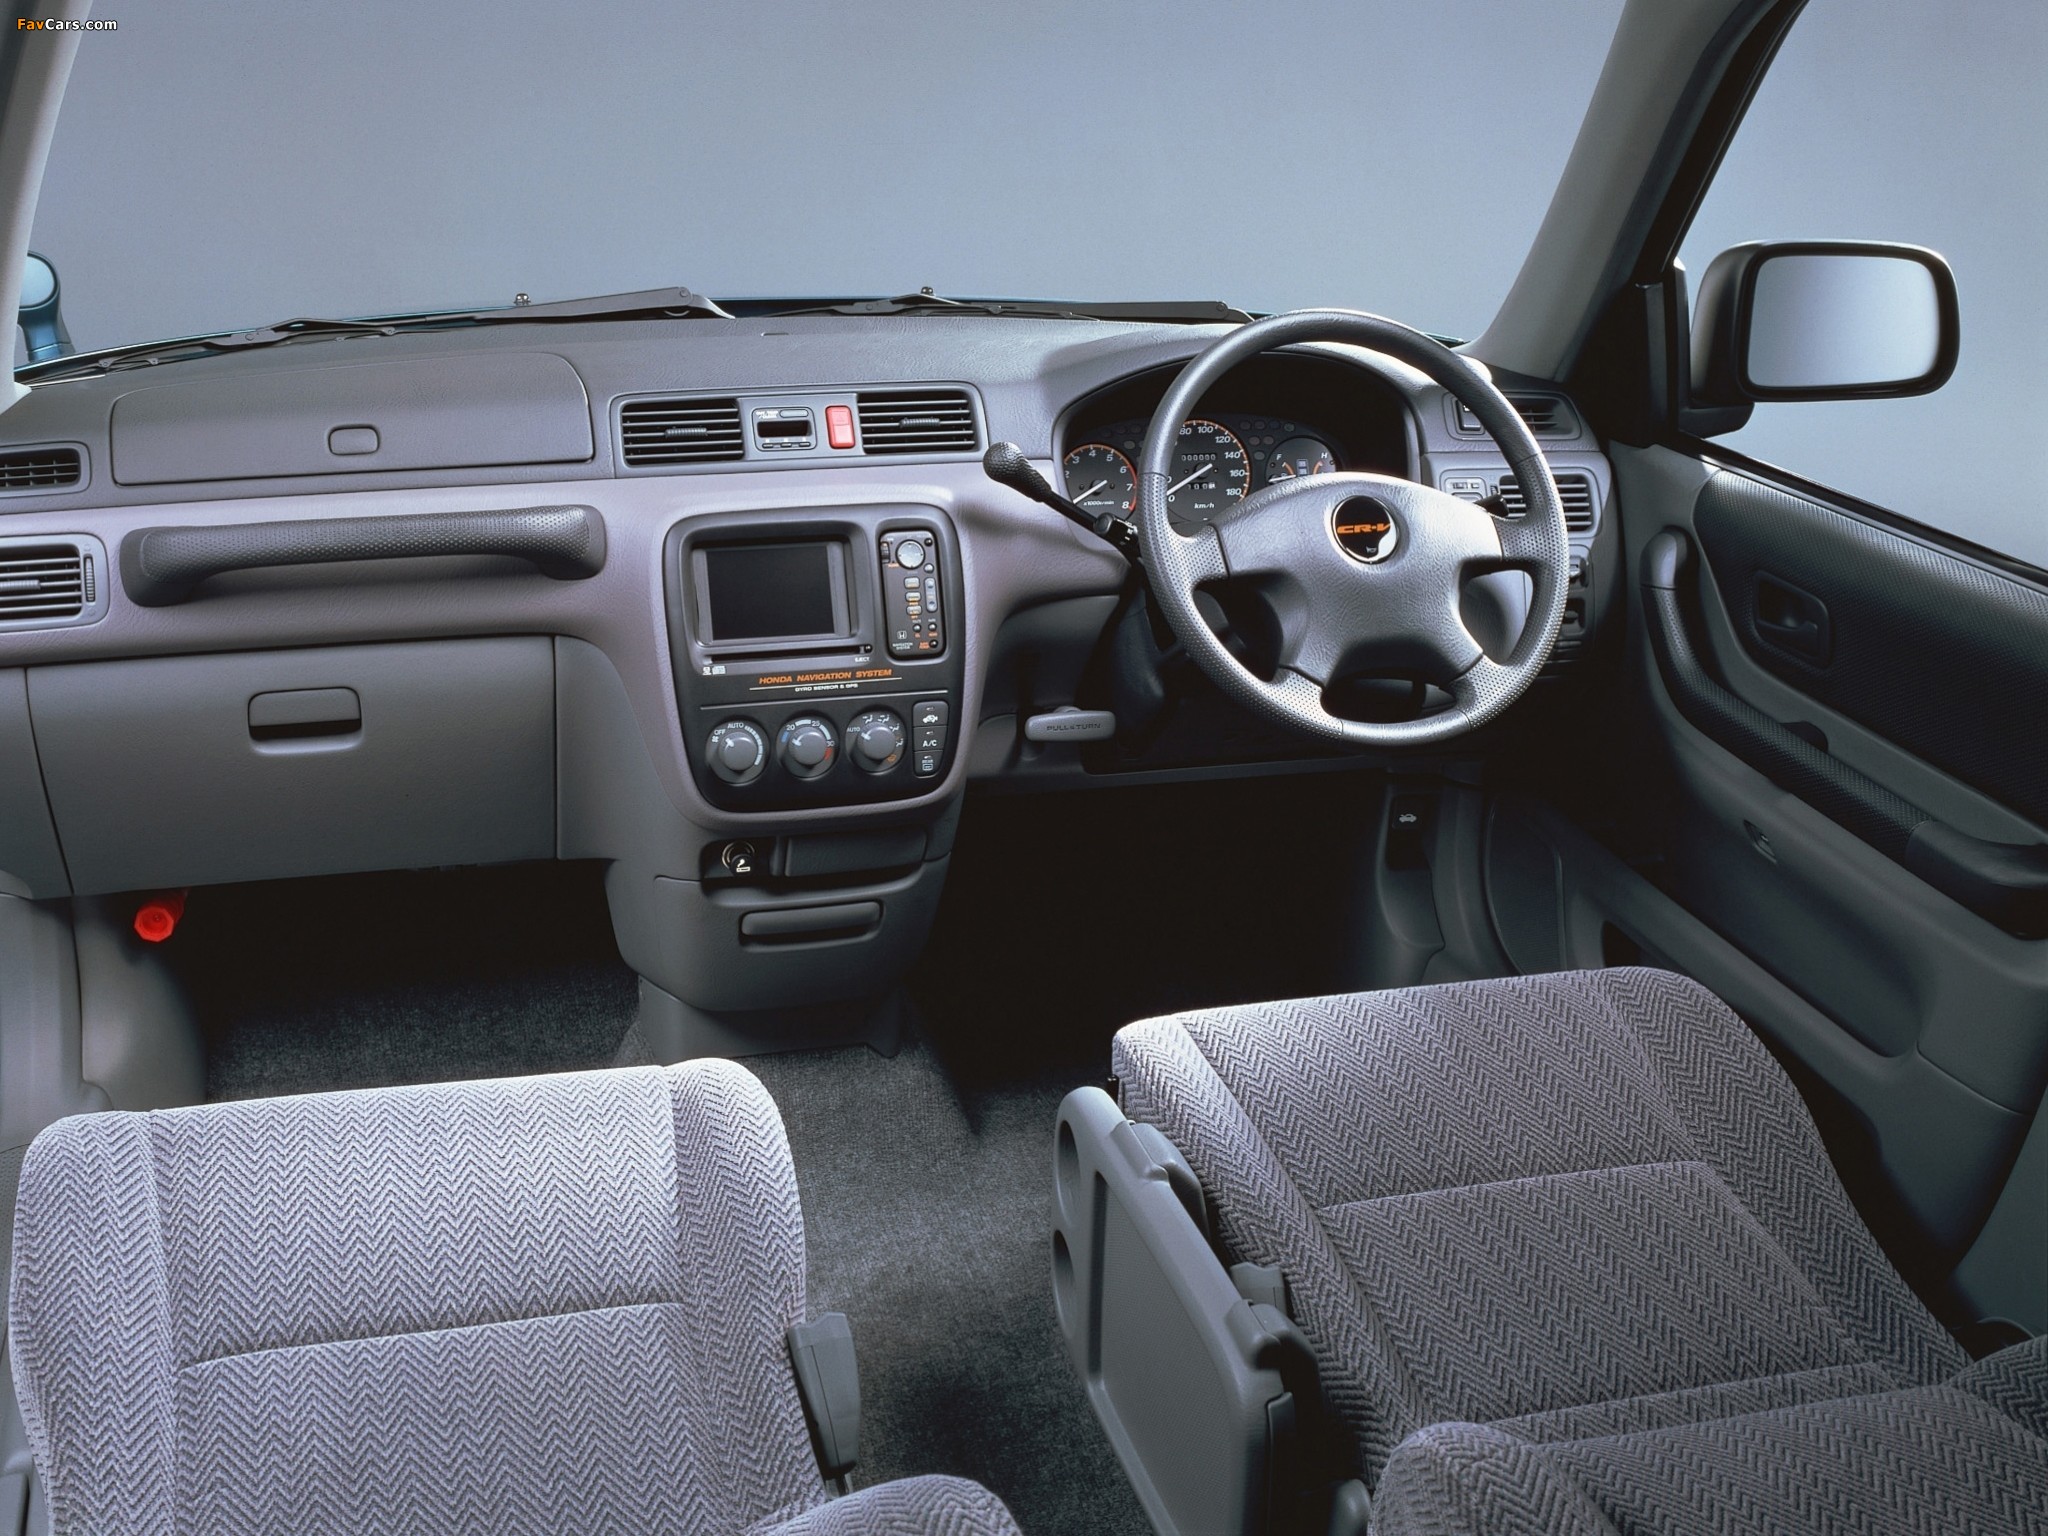 Honda crv 1 поколение. Honda CR V 1997 Interior. Honda CR-V rd1 салон. Хода СРВ 1поколение салон. Honda CR-V 1 поколение салон.